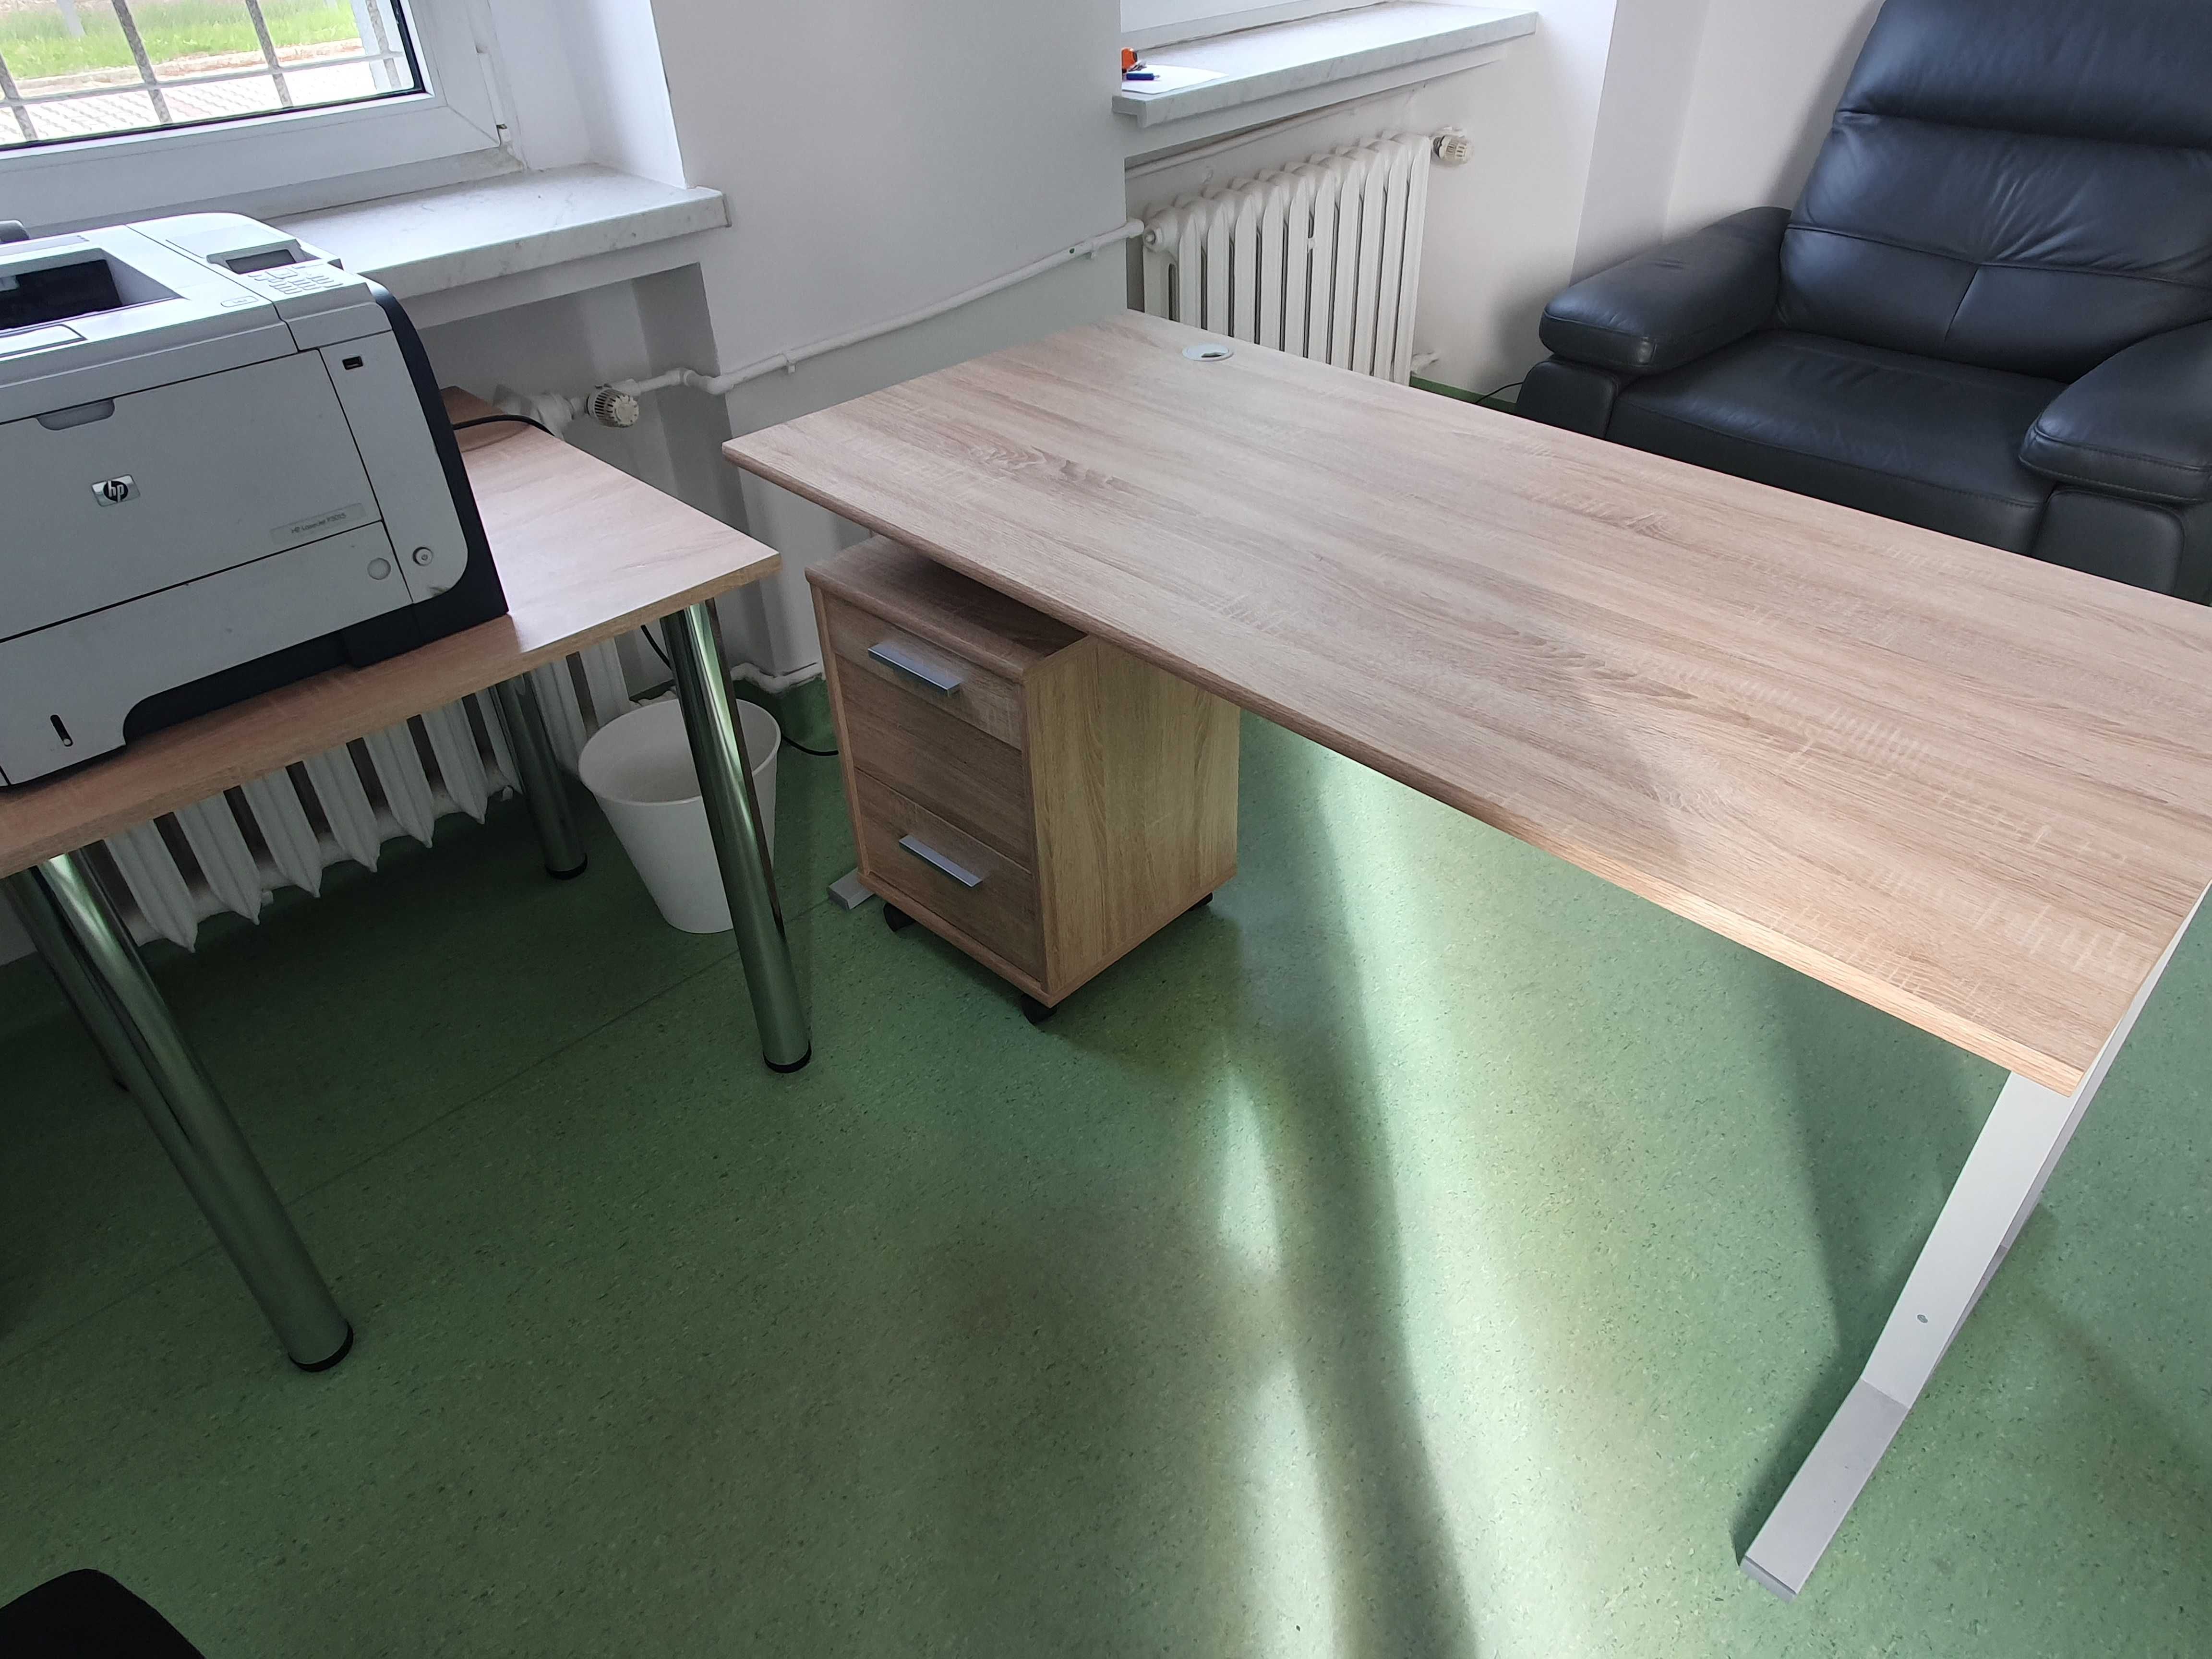 Meble biurowe biurko kontener regał stół stolik krzesło konferencyjne